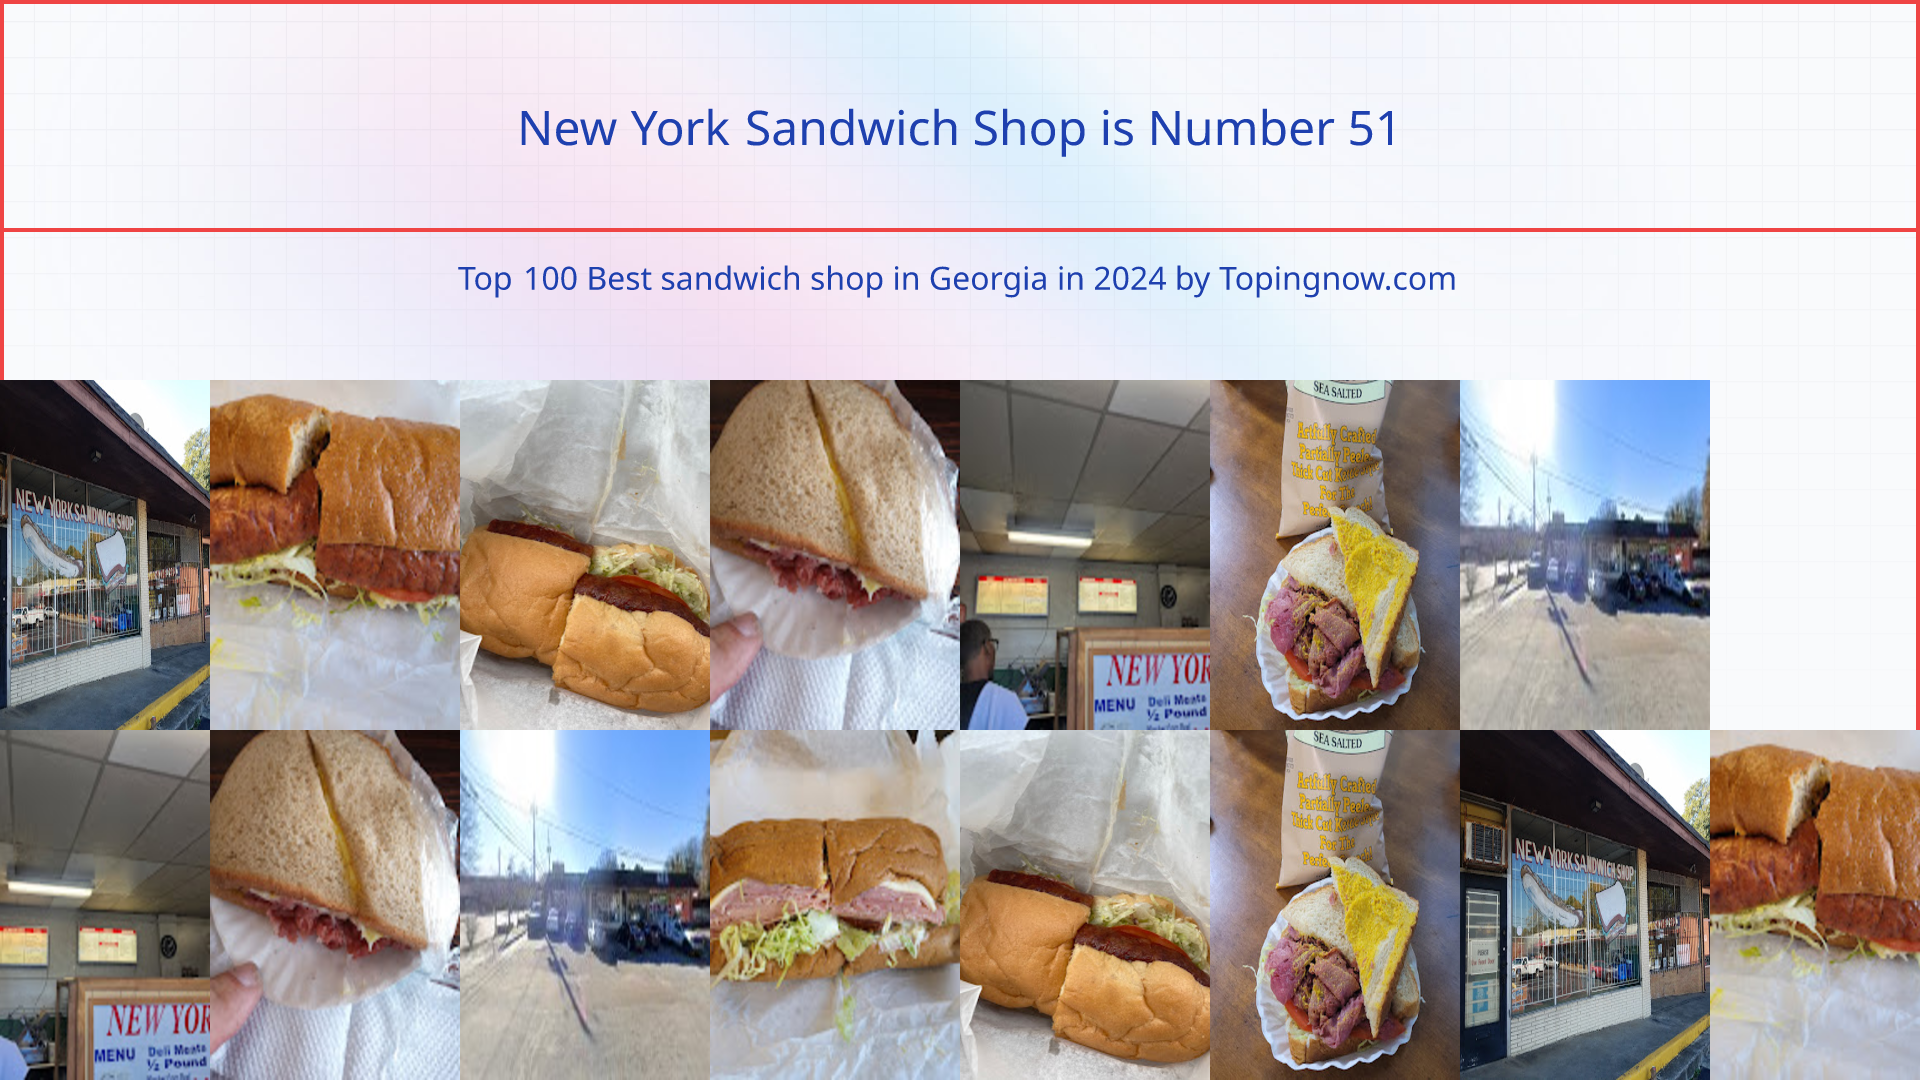 New York Sandwich Shop: Top 100 Best sandwich shop in Georgia in 2024